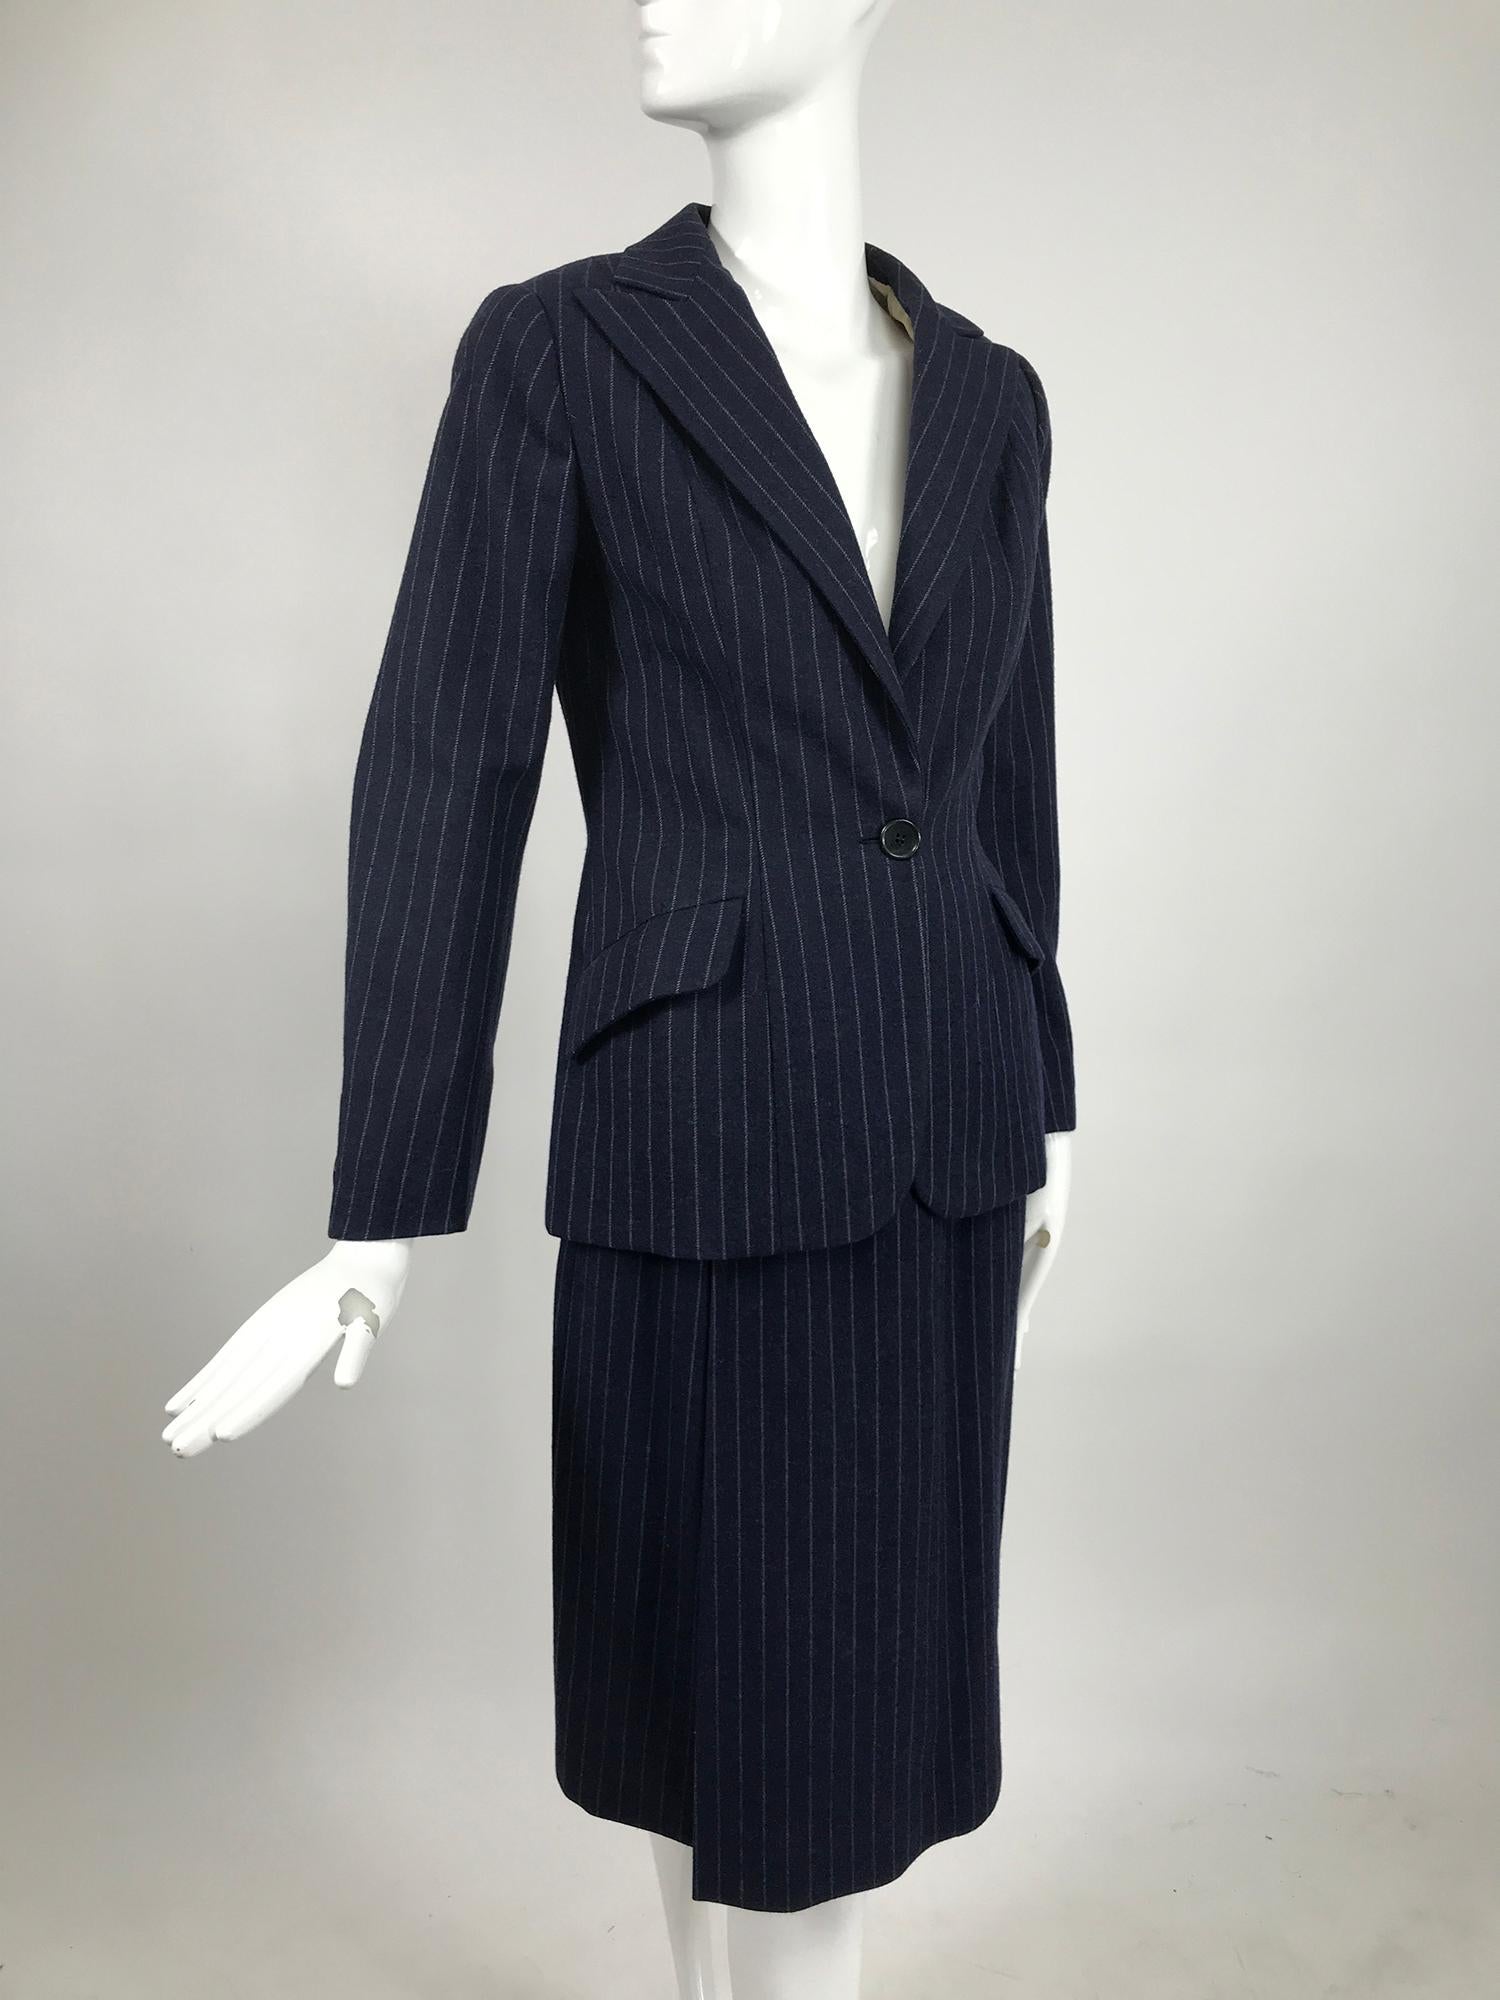 Combinaison vintage Maggy Rouff Couture en laine à rayures en bleu militaire et gris, du début des années 1950. Veste croisée se fermant par un seul bouton à la taille, revers crantés, poches de travail à rabat incliné, buste à pinces, taille